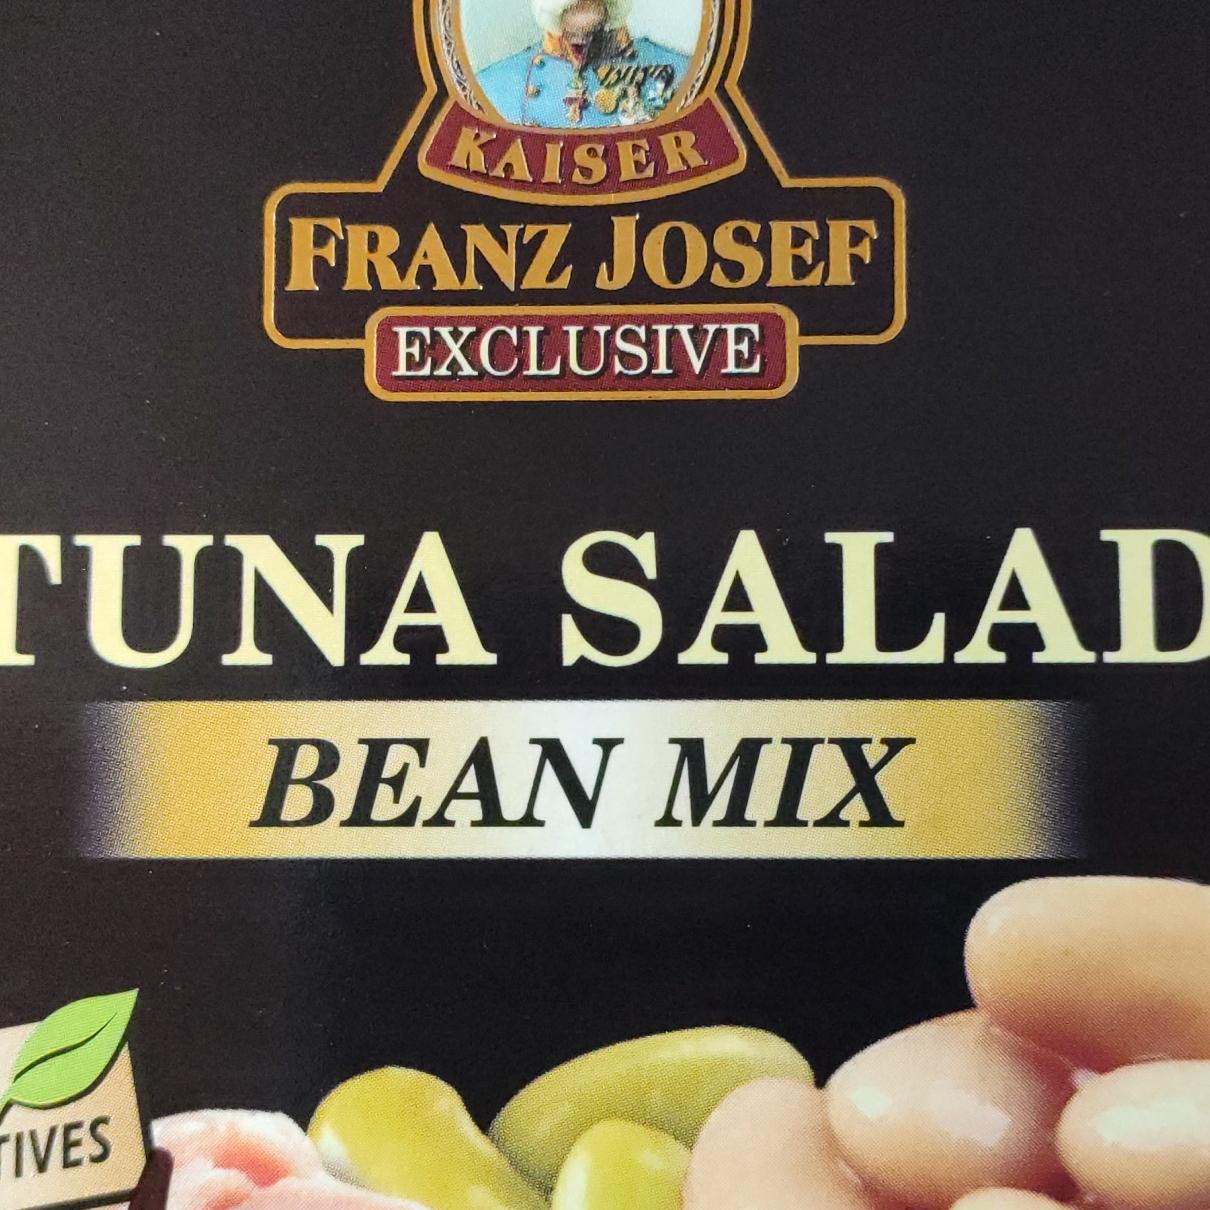 Fotografie - Tuna salad Bean mix Kaiser Franz Josef